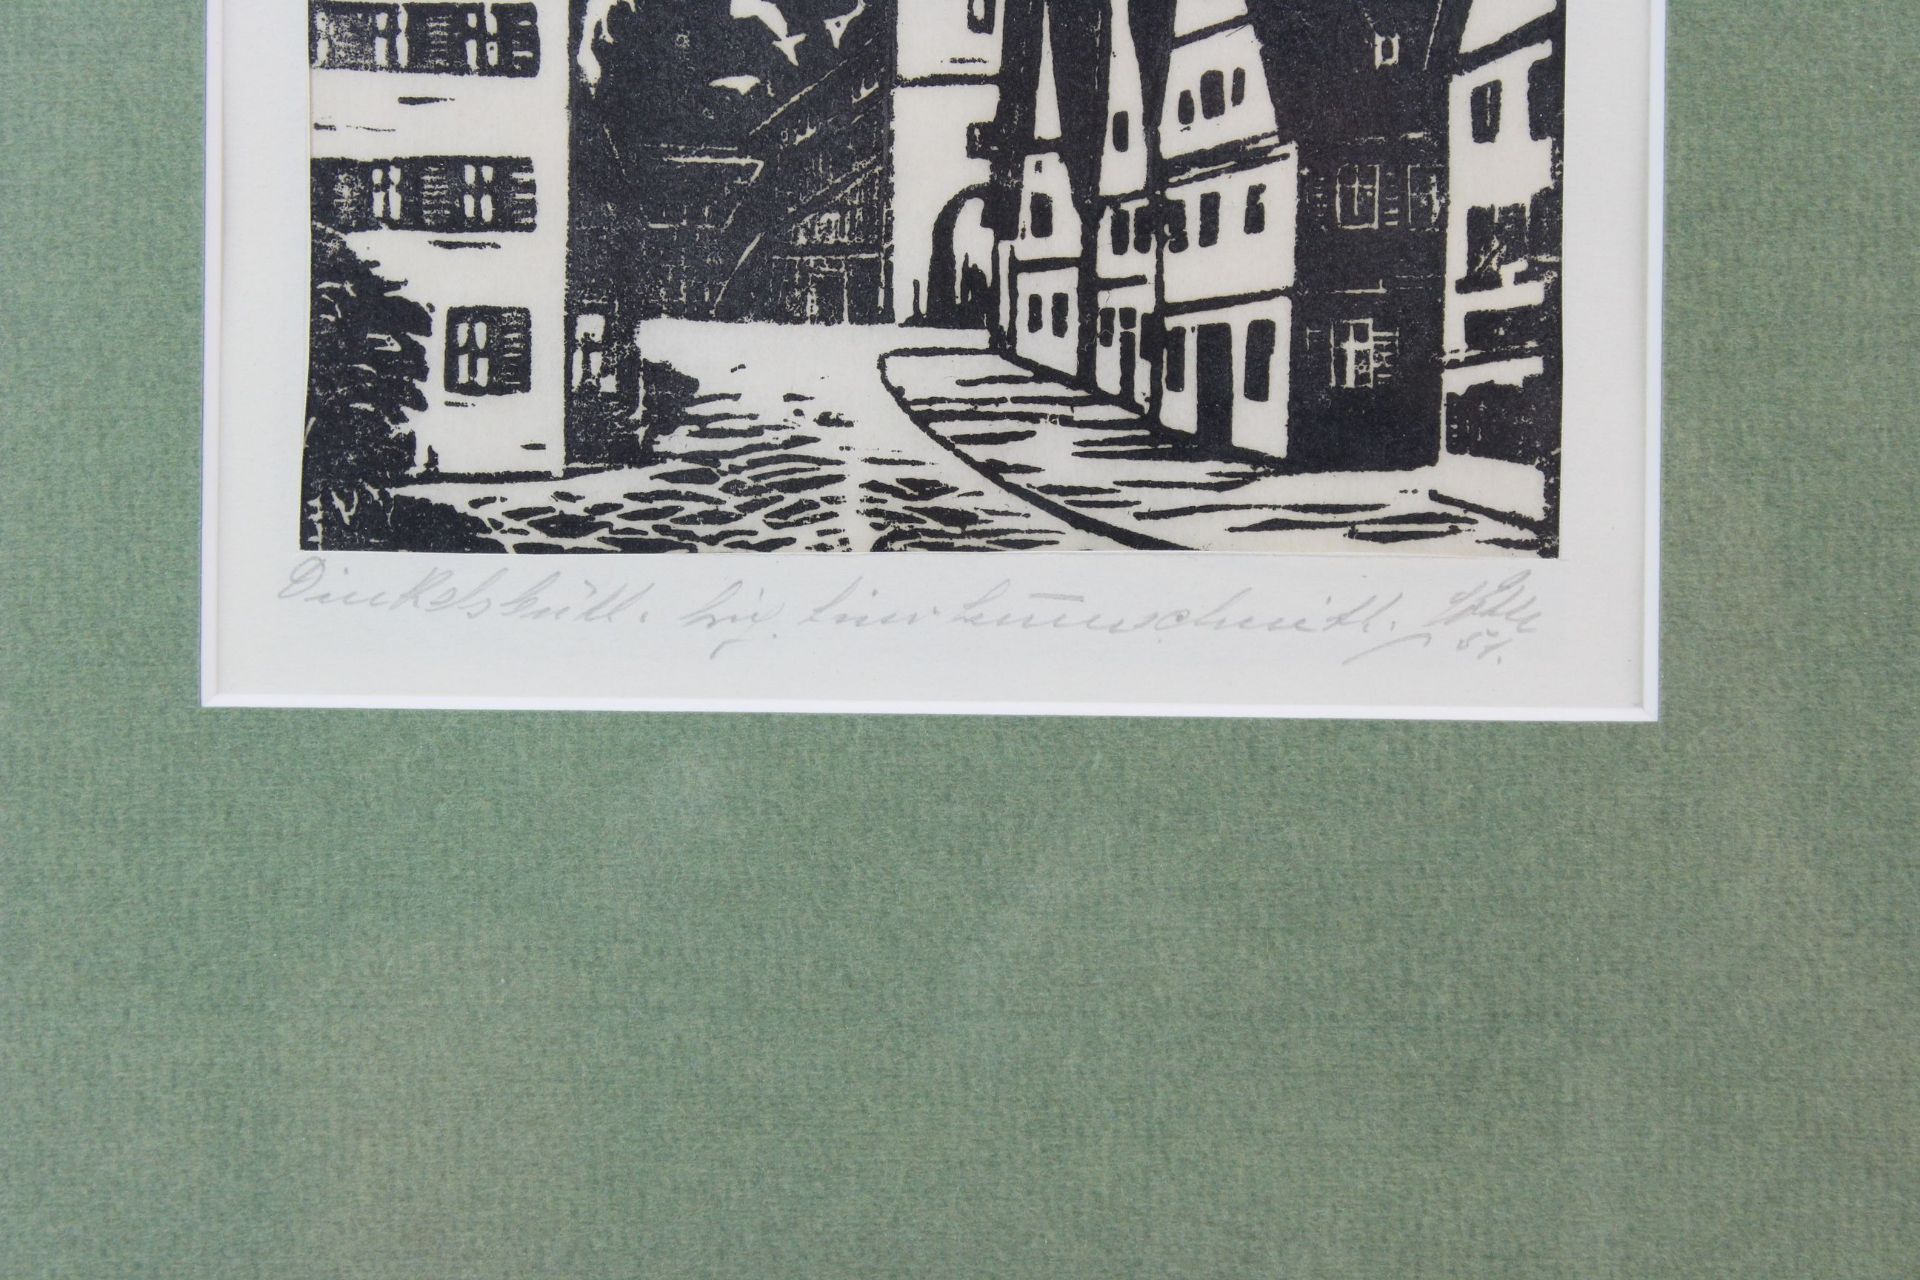 2 Holzschnitte Dinkelsbühl und Rothenburg ob der Tauber - Bild 2 aus 3